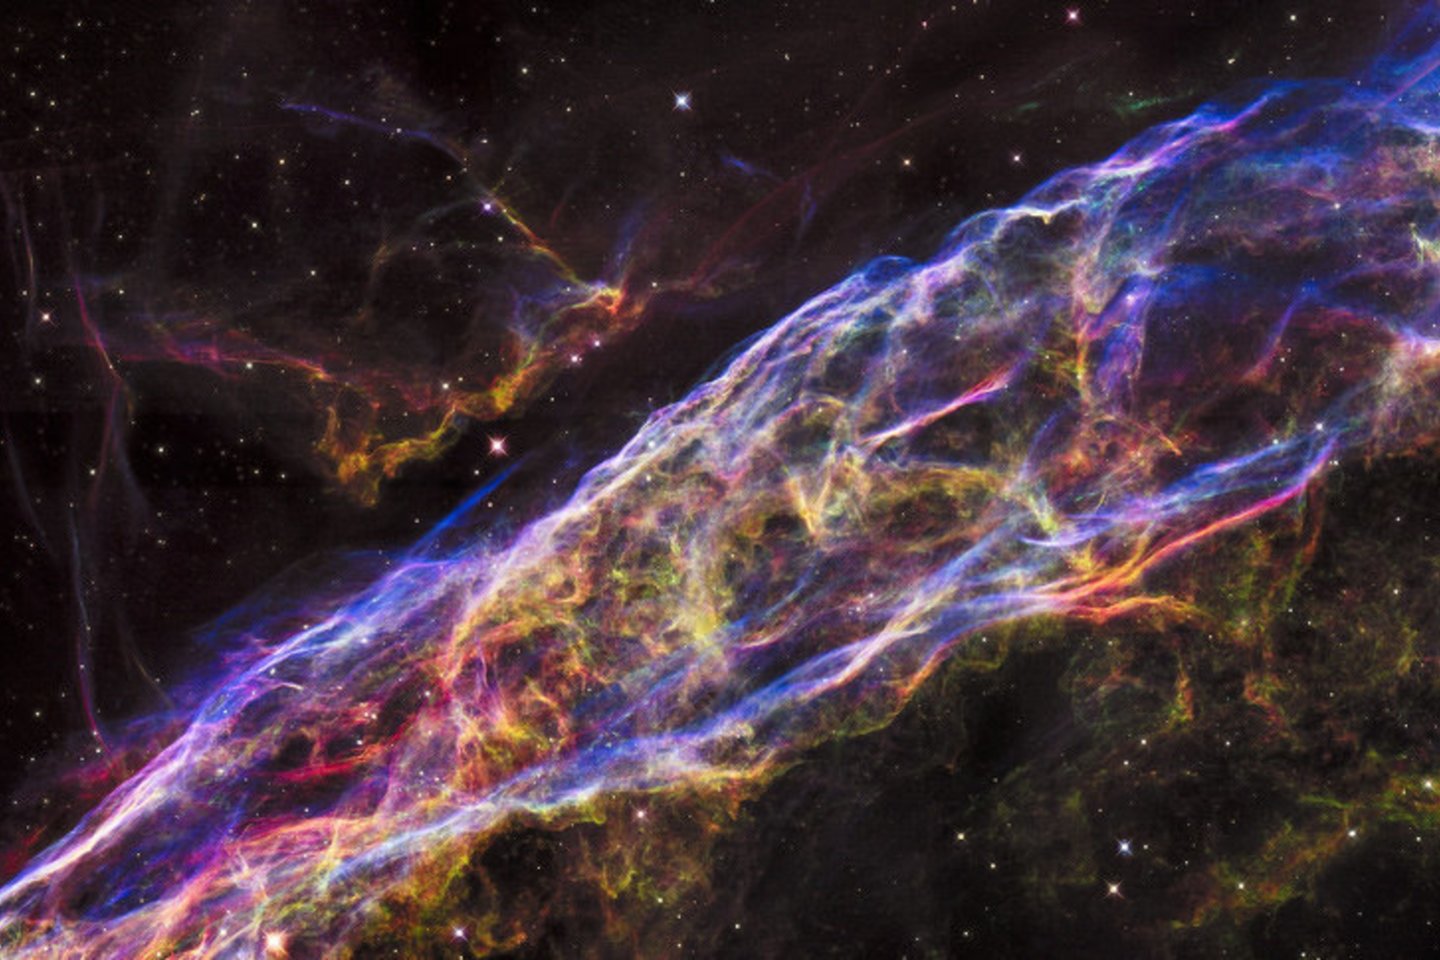 Tinklo ūkas susidarė sprogus supernovai ir yra toks didelis, kad nepaisant to, jog yra neįtikėtinai toli – Žemėje jis matomas vis tiek 5 kartus didesnis už pilnatį. <br>NASA nuotr. 